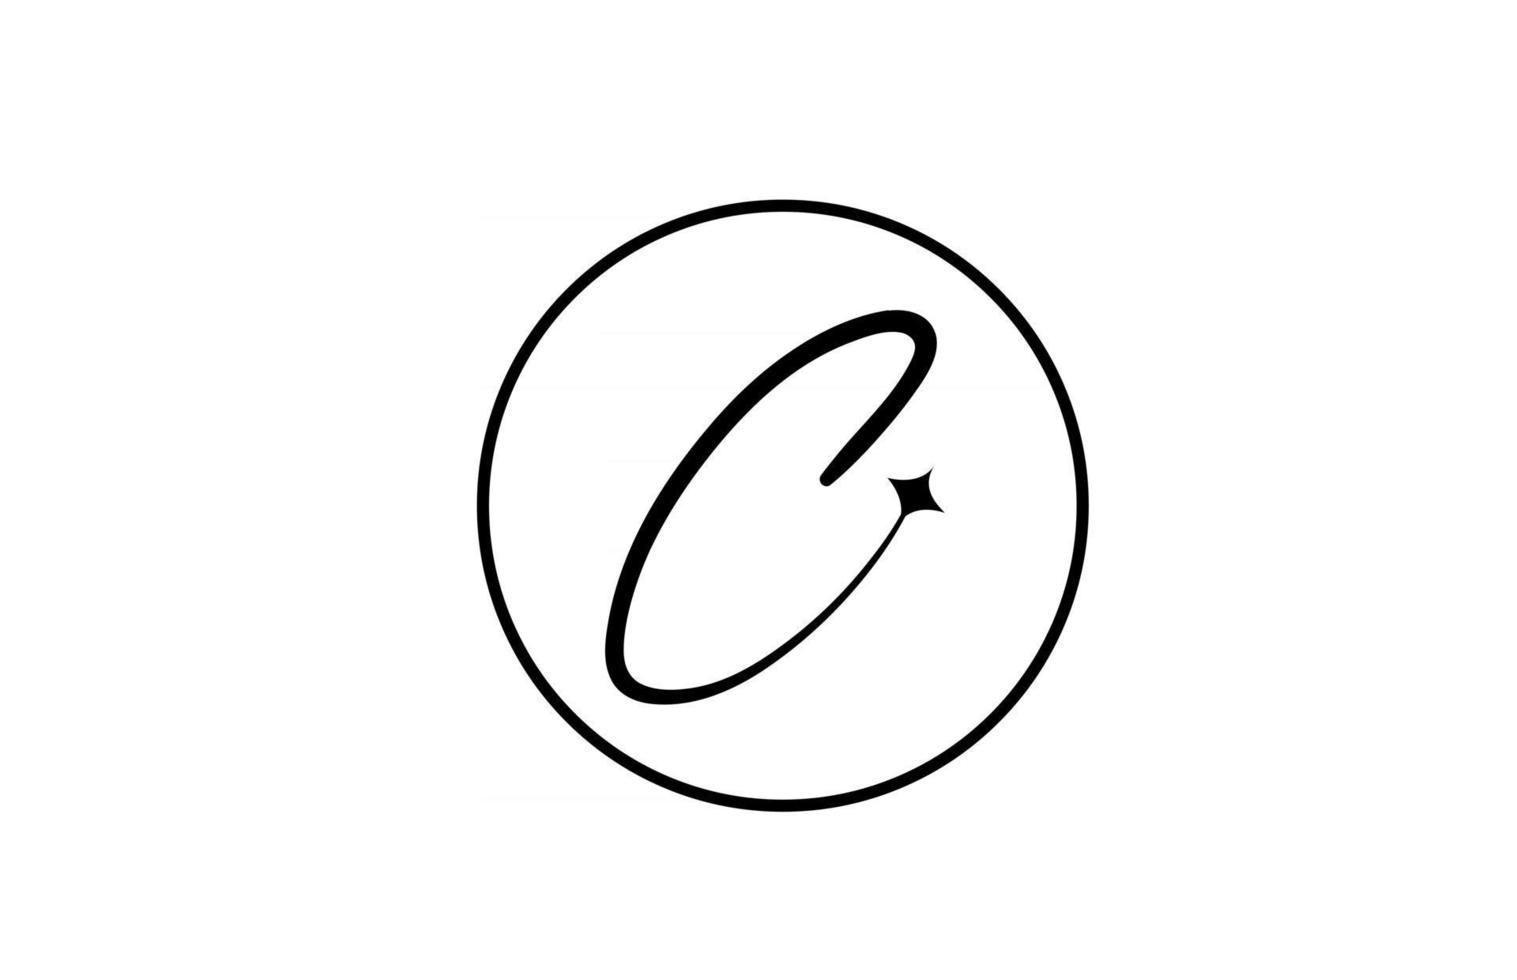 c alfabet letter logo voor zaken met ster en cirkel. eenvoudige elegante belettering voor bedrijf. huisstijl branding icoon ontwerp in wit en zwart vector